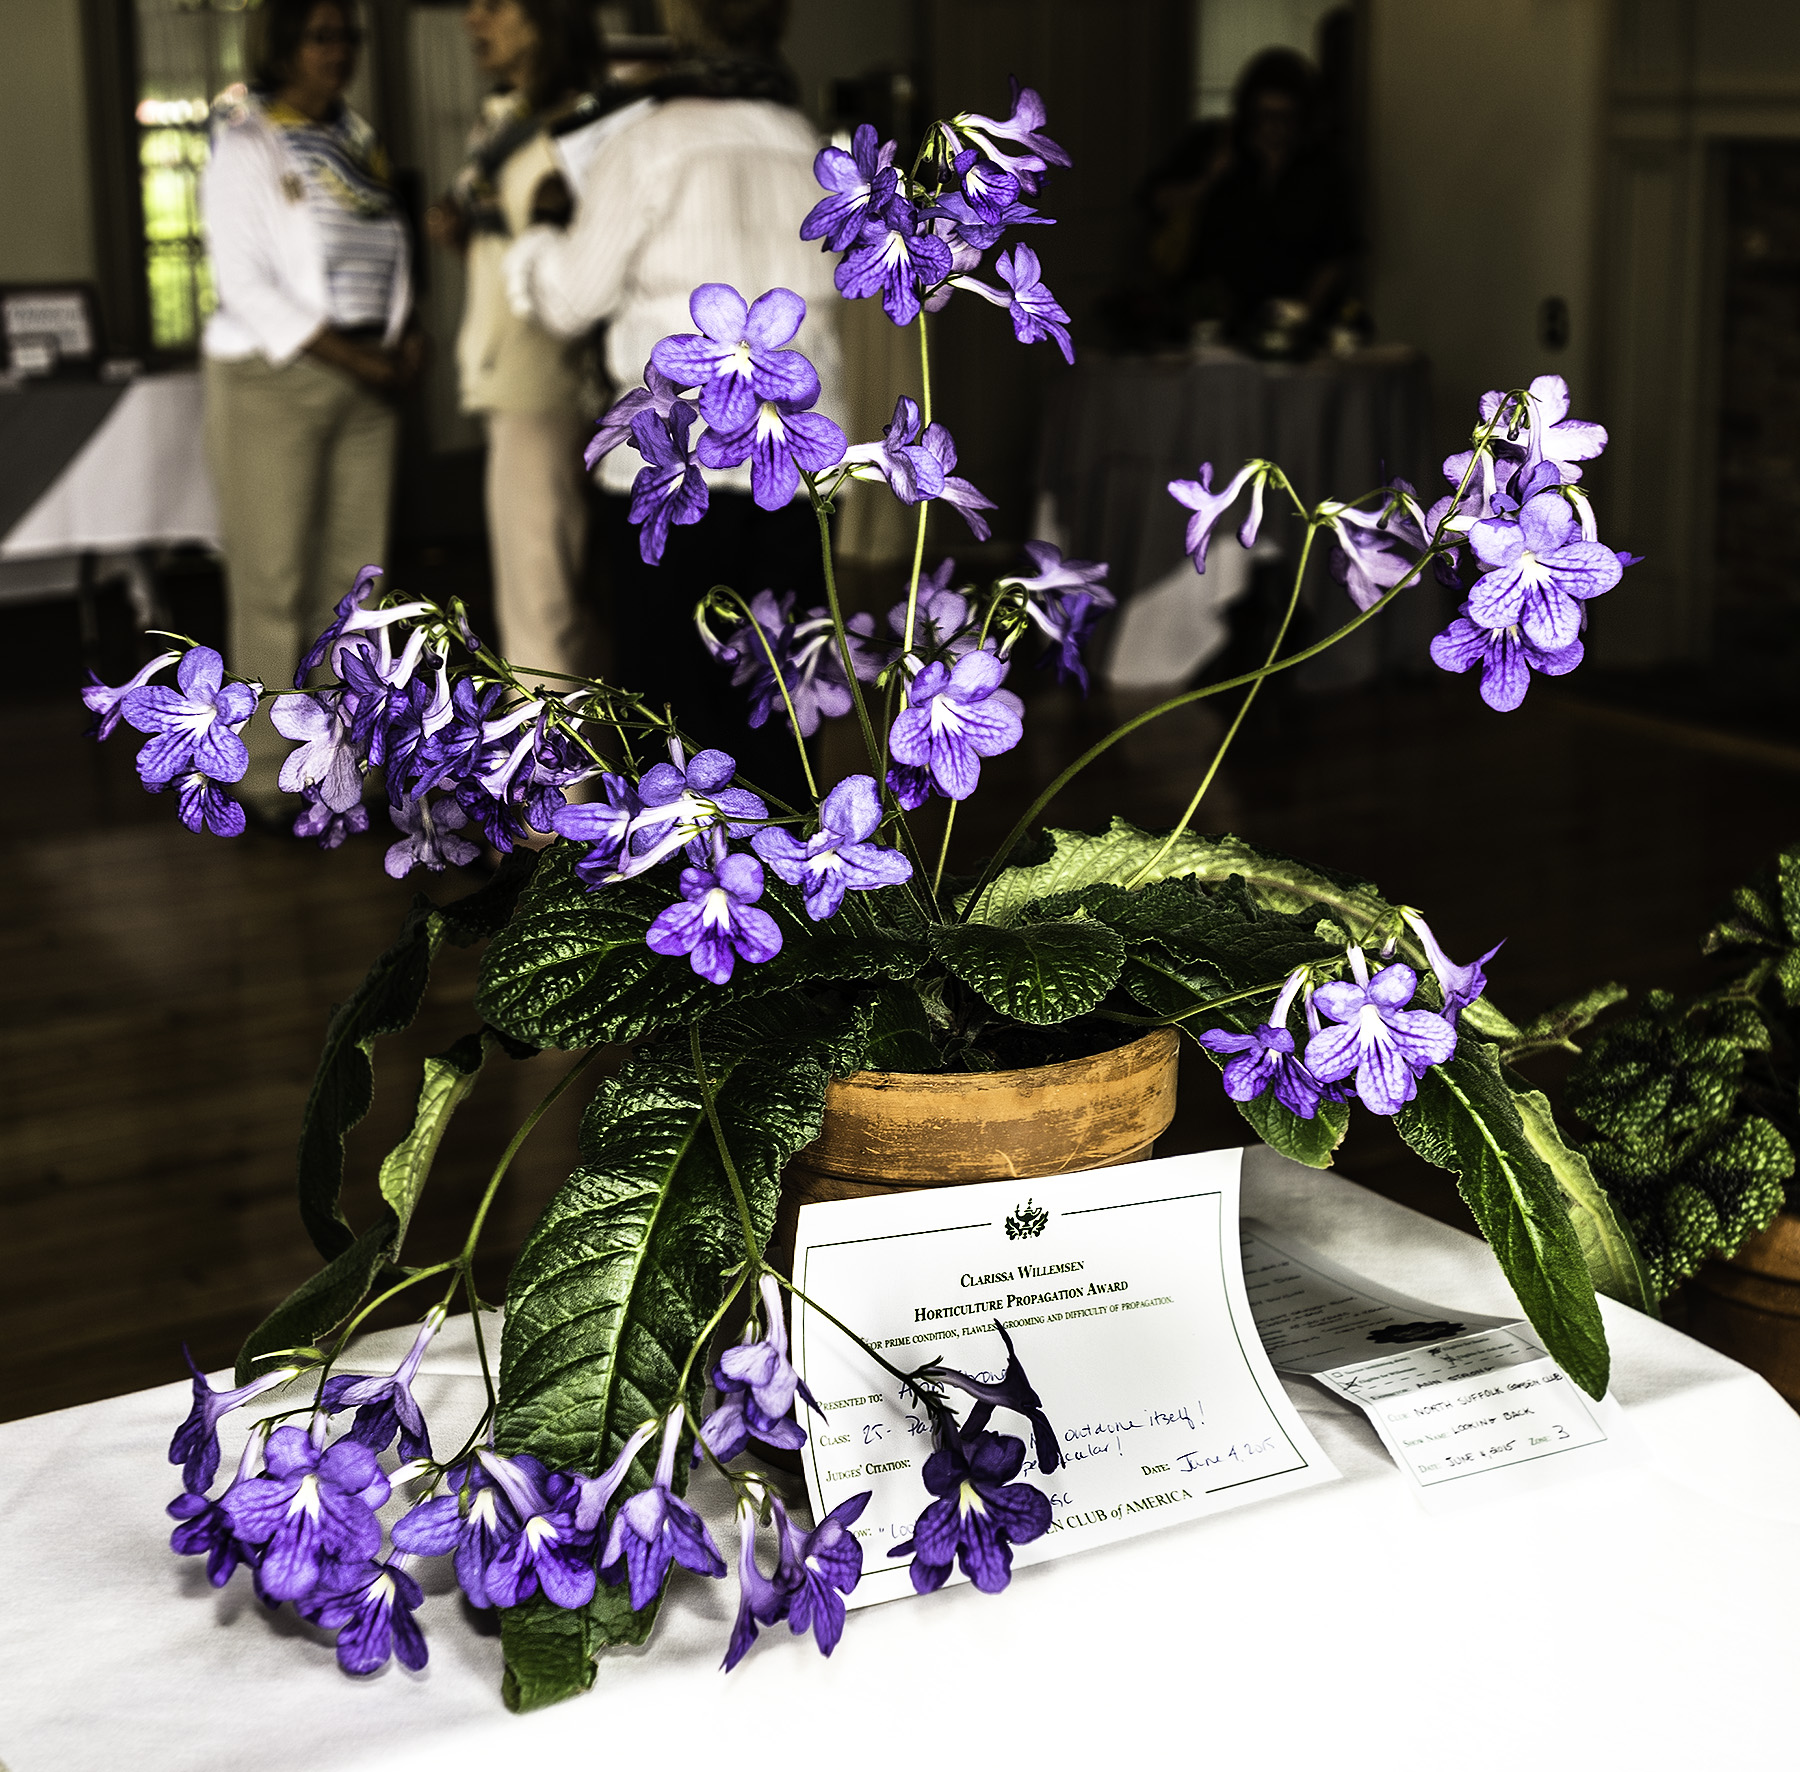 June 2015 Flower Show The North Suffolk Garden Club